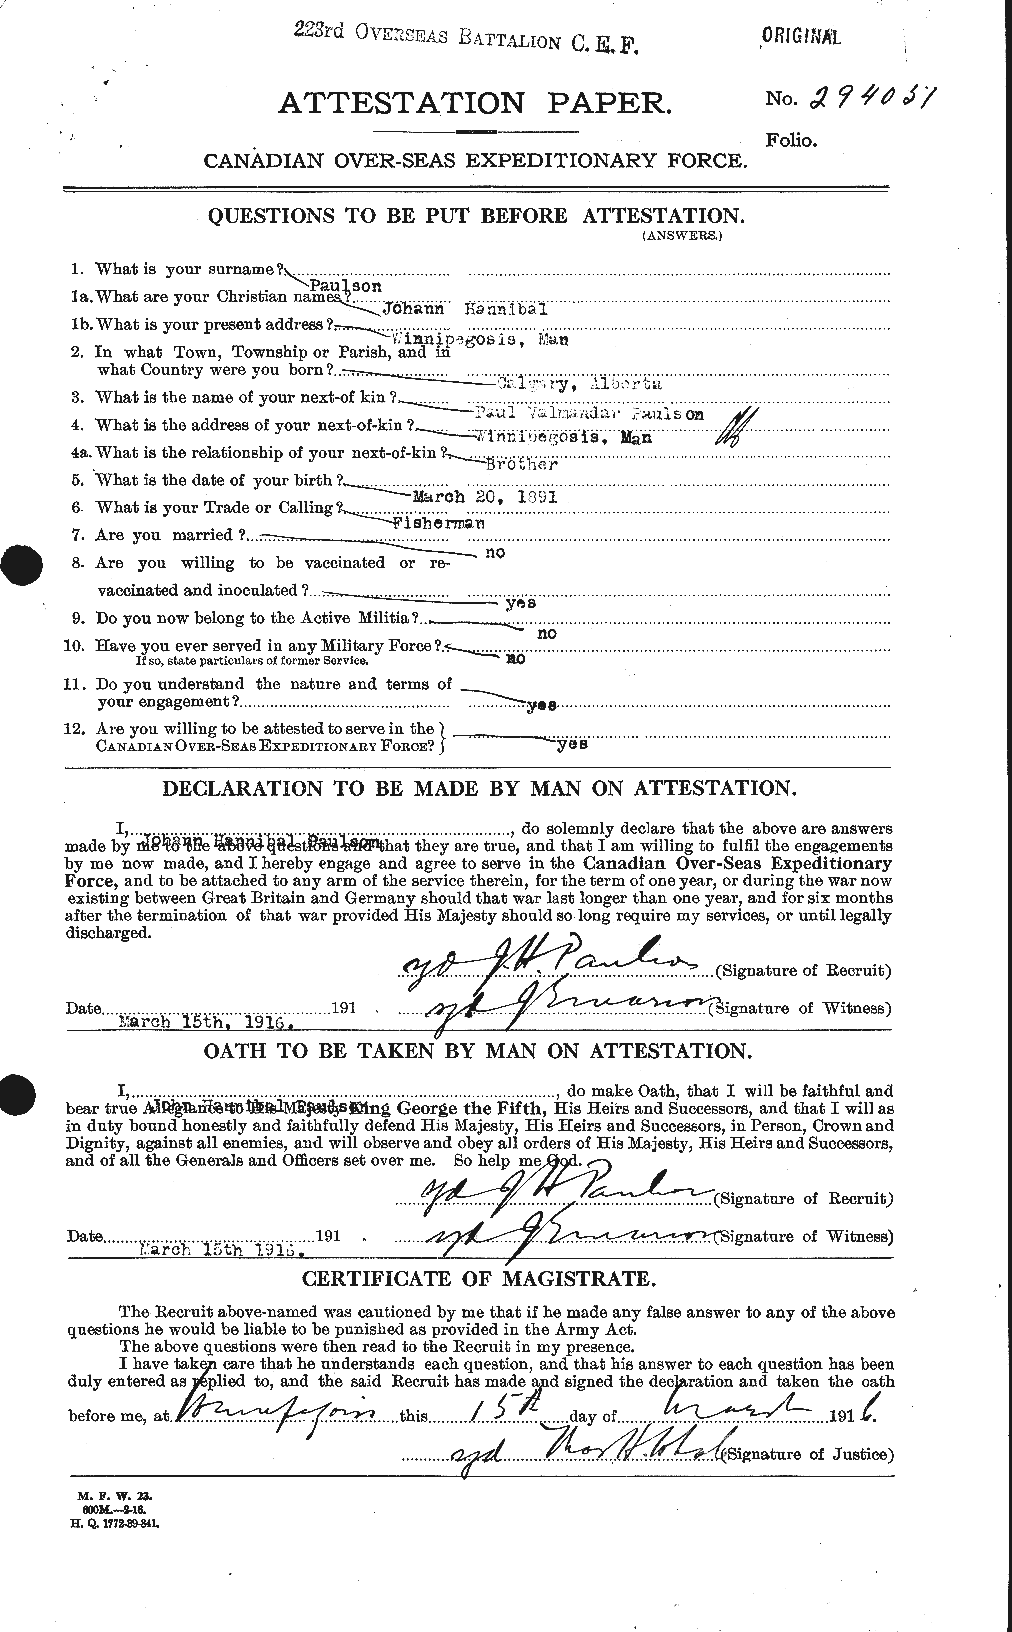 Dossiers du Personnel de la Première Guerre mondiale - CEC 569524a